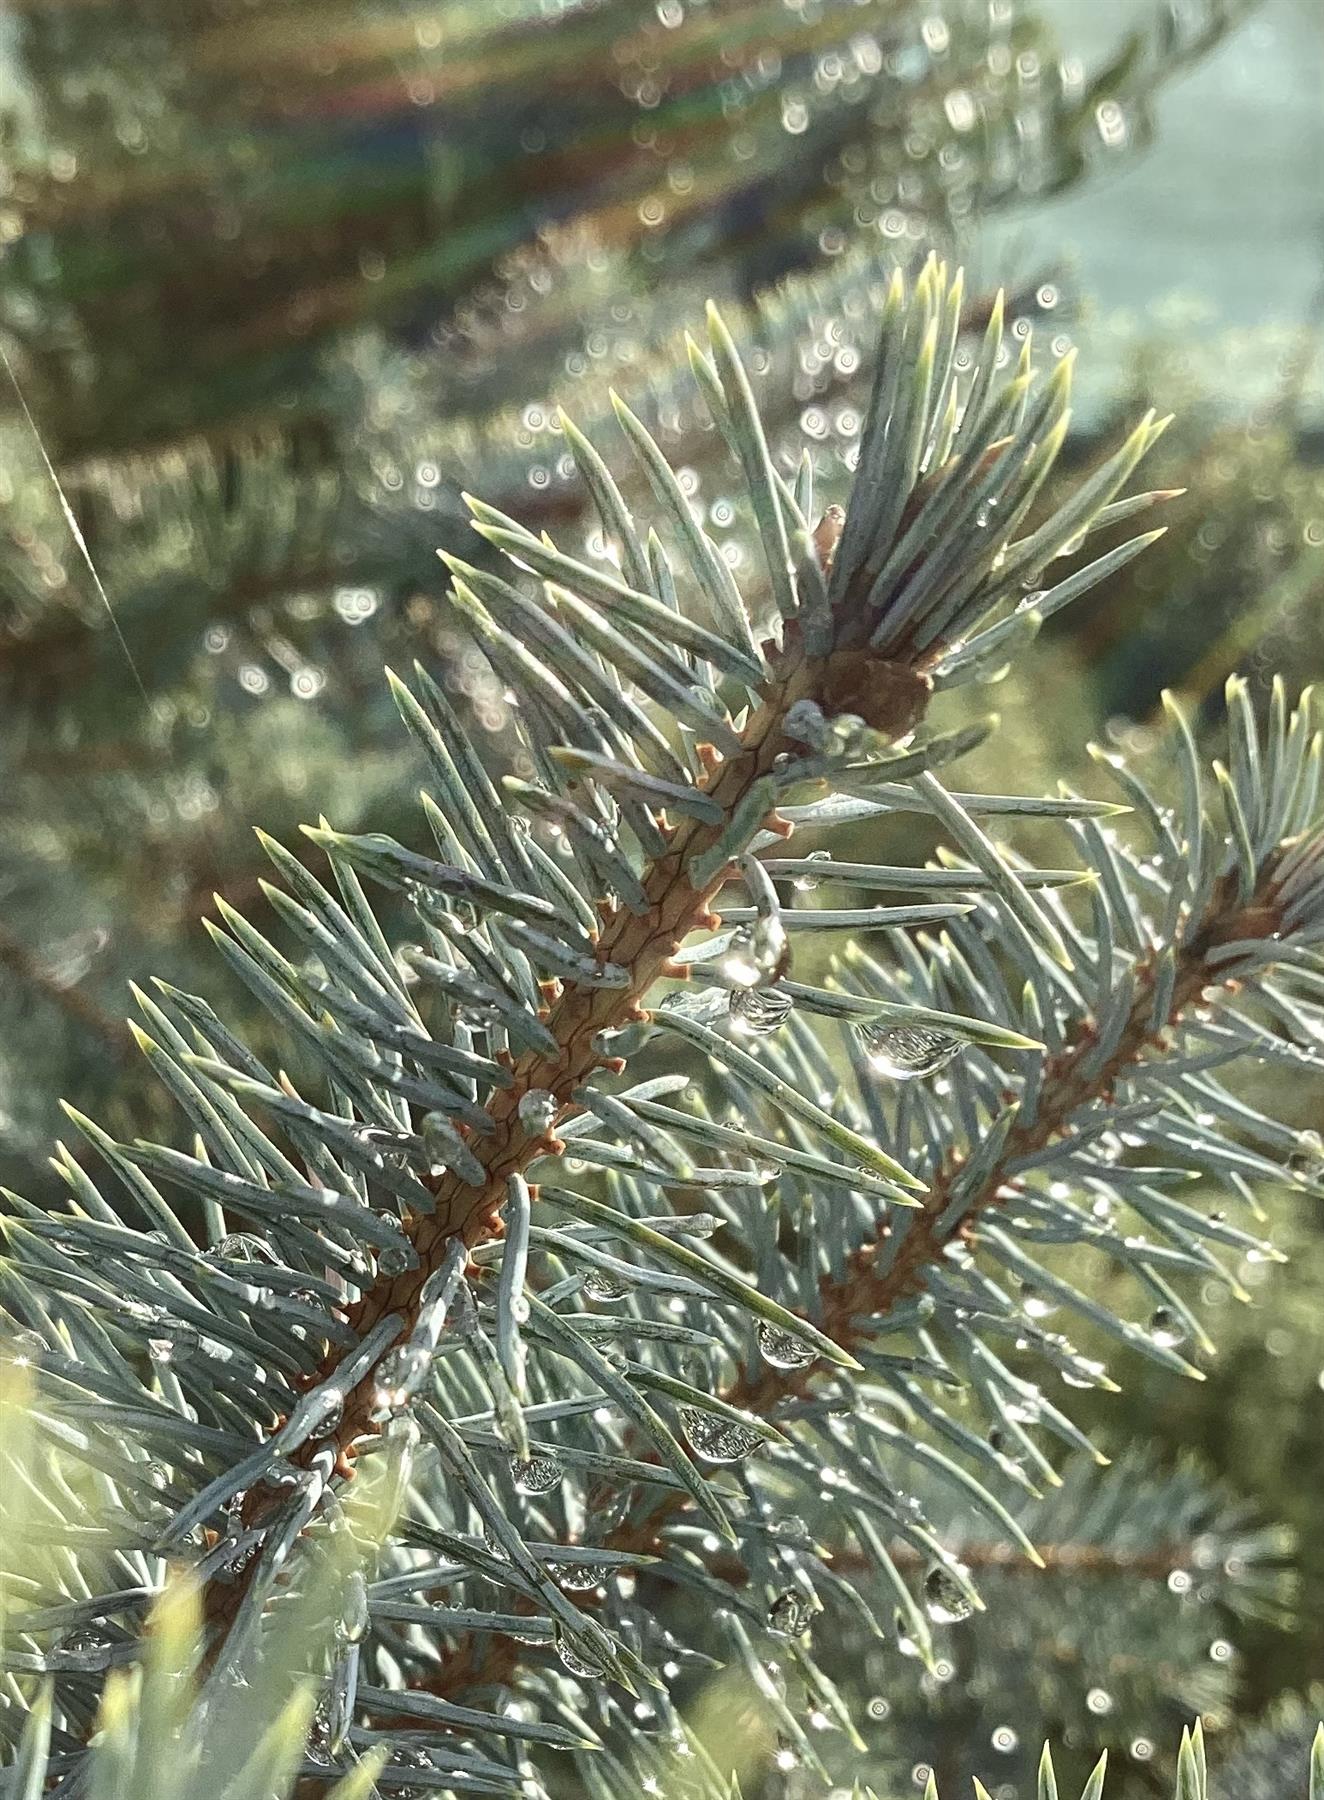 Picea pungens | Colorado Blue Spruce - 120-150cm, 70lt